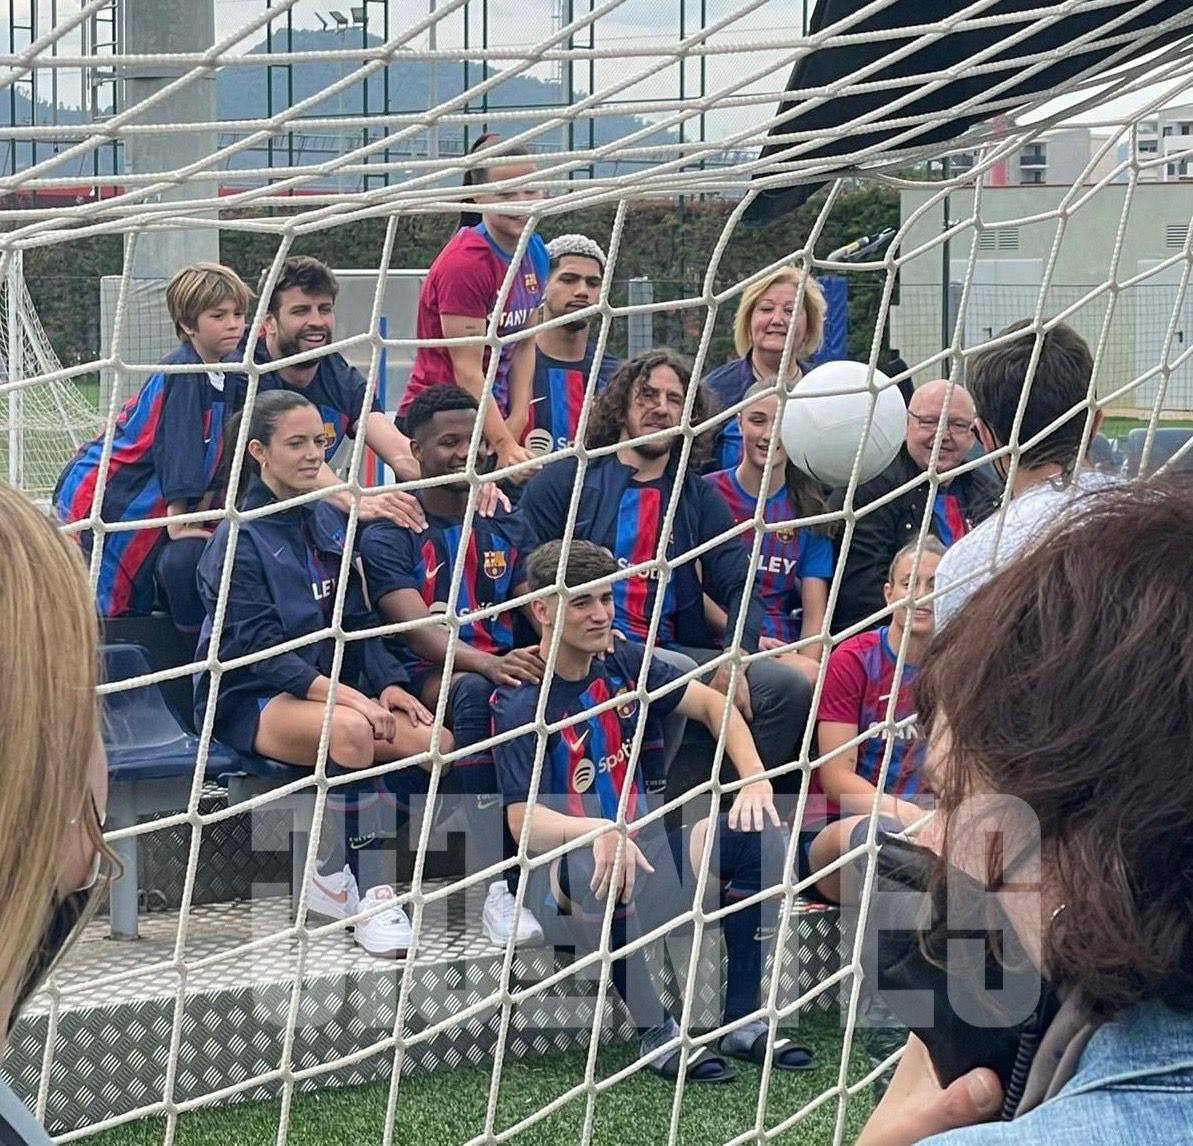 La sesión de fotos del Barça con la camiseta de la próxima temporada / Jijantes